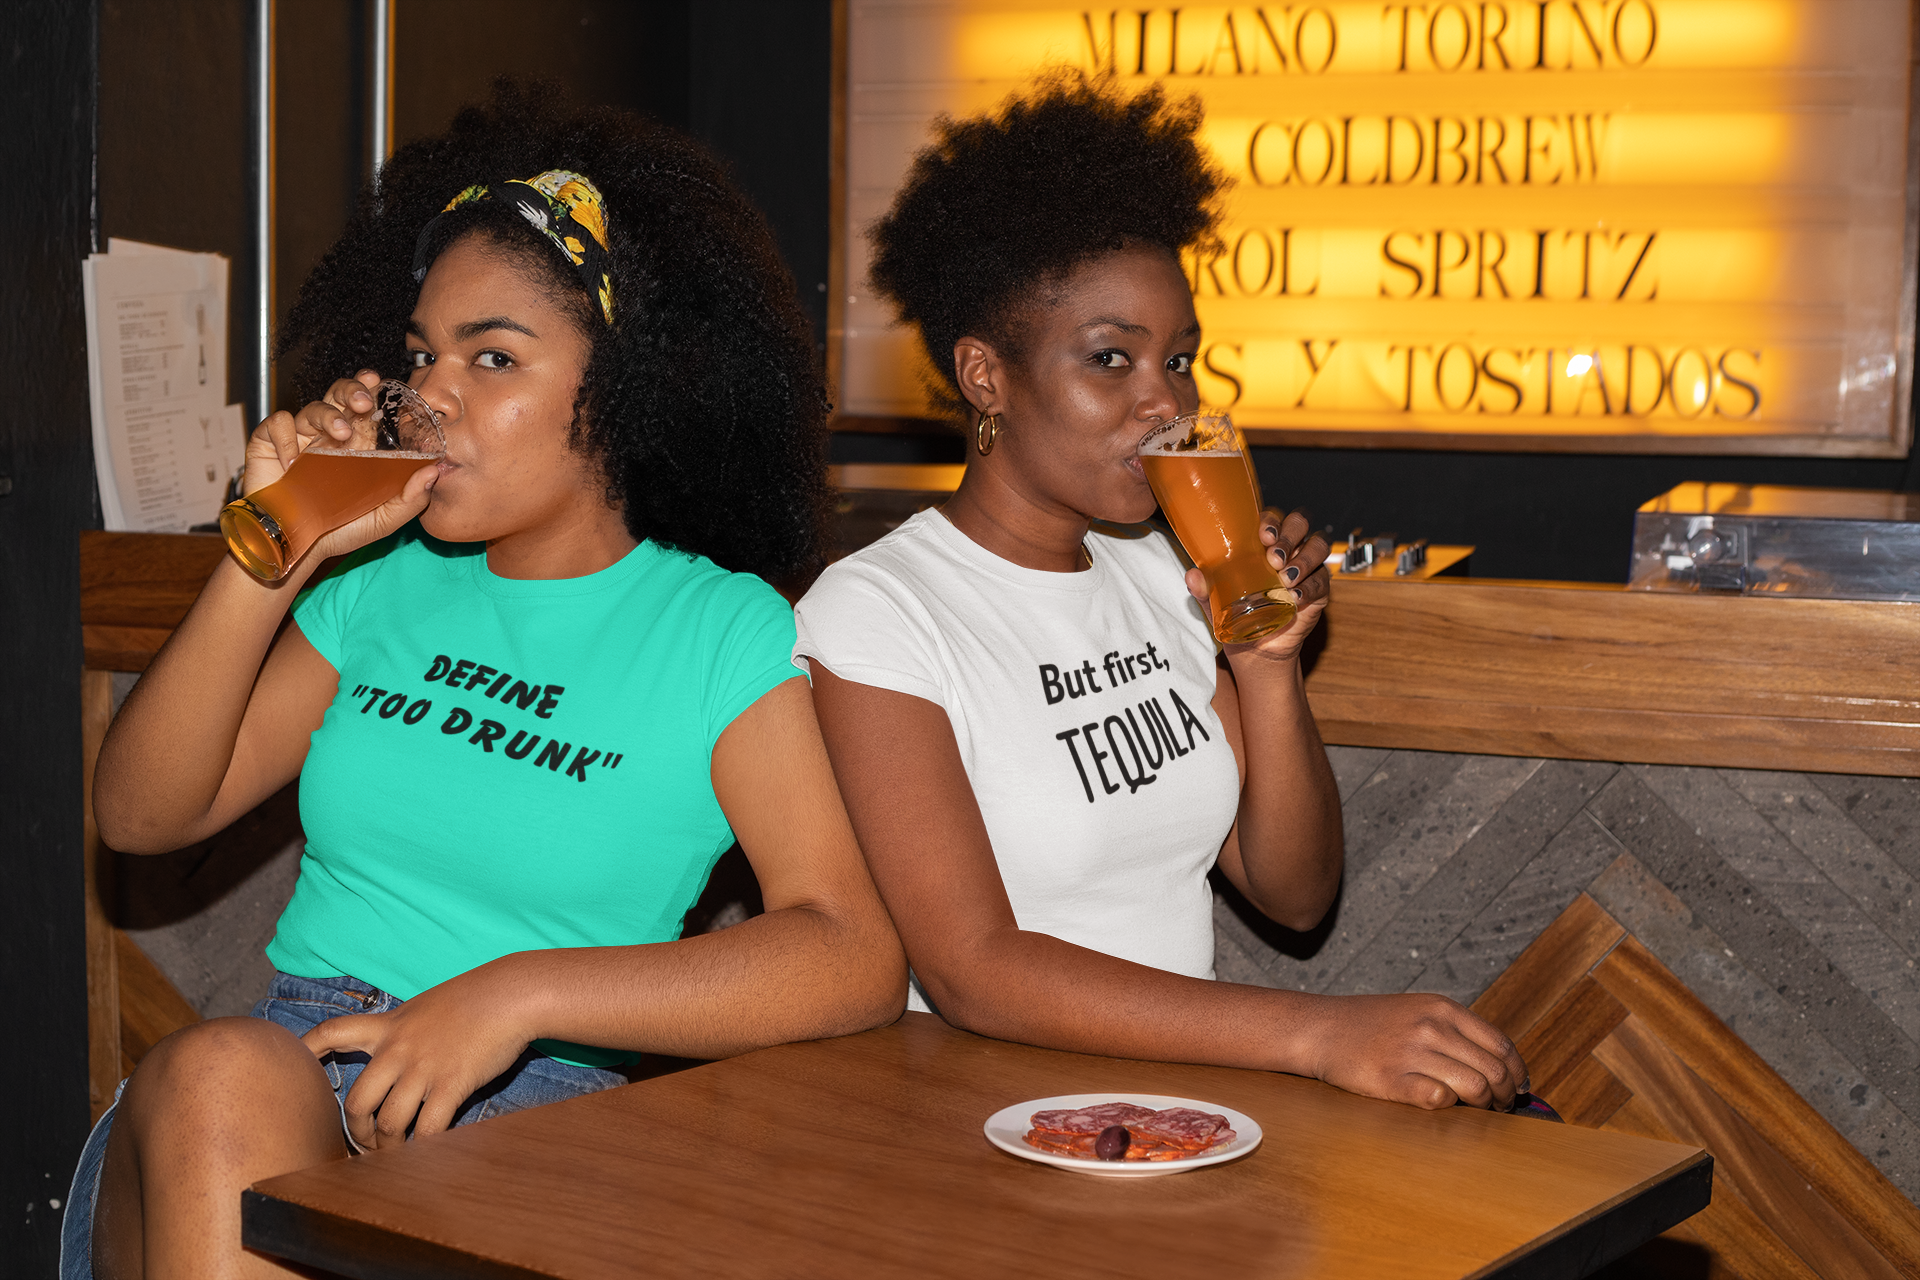 Women's Define Too Drunk Mint Green T-Shirt